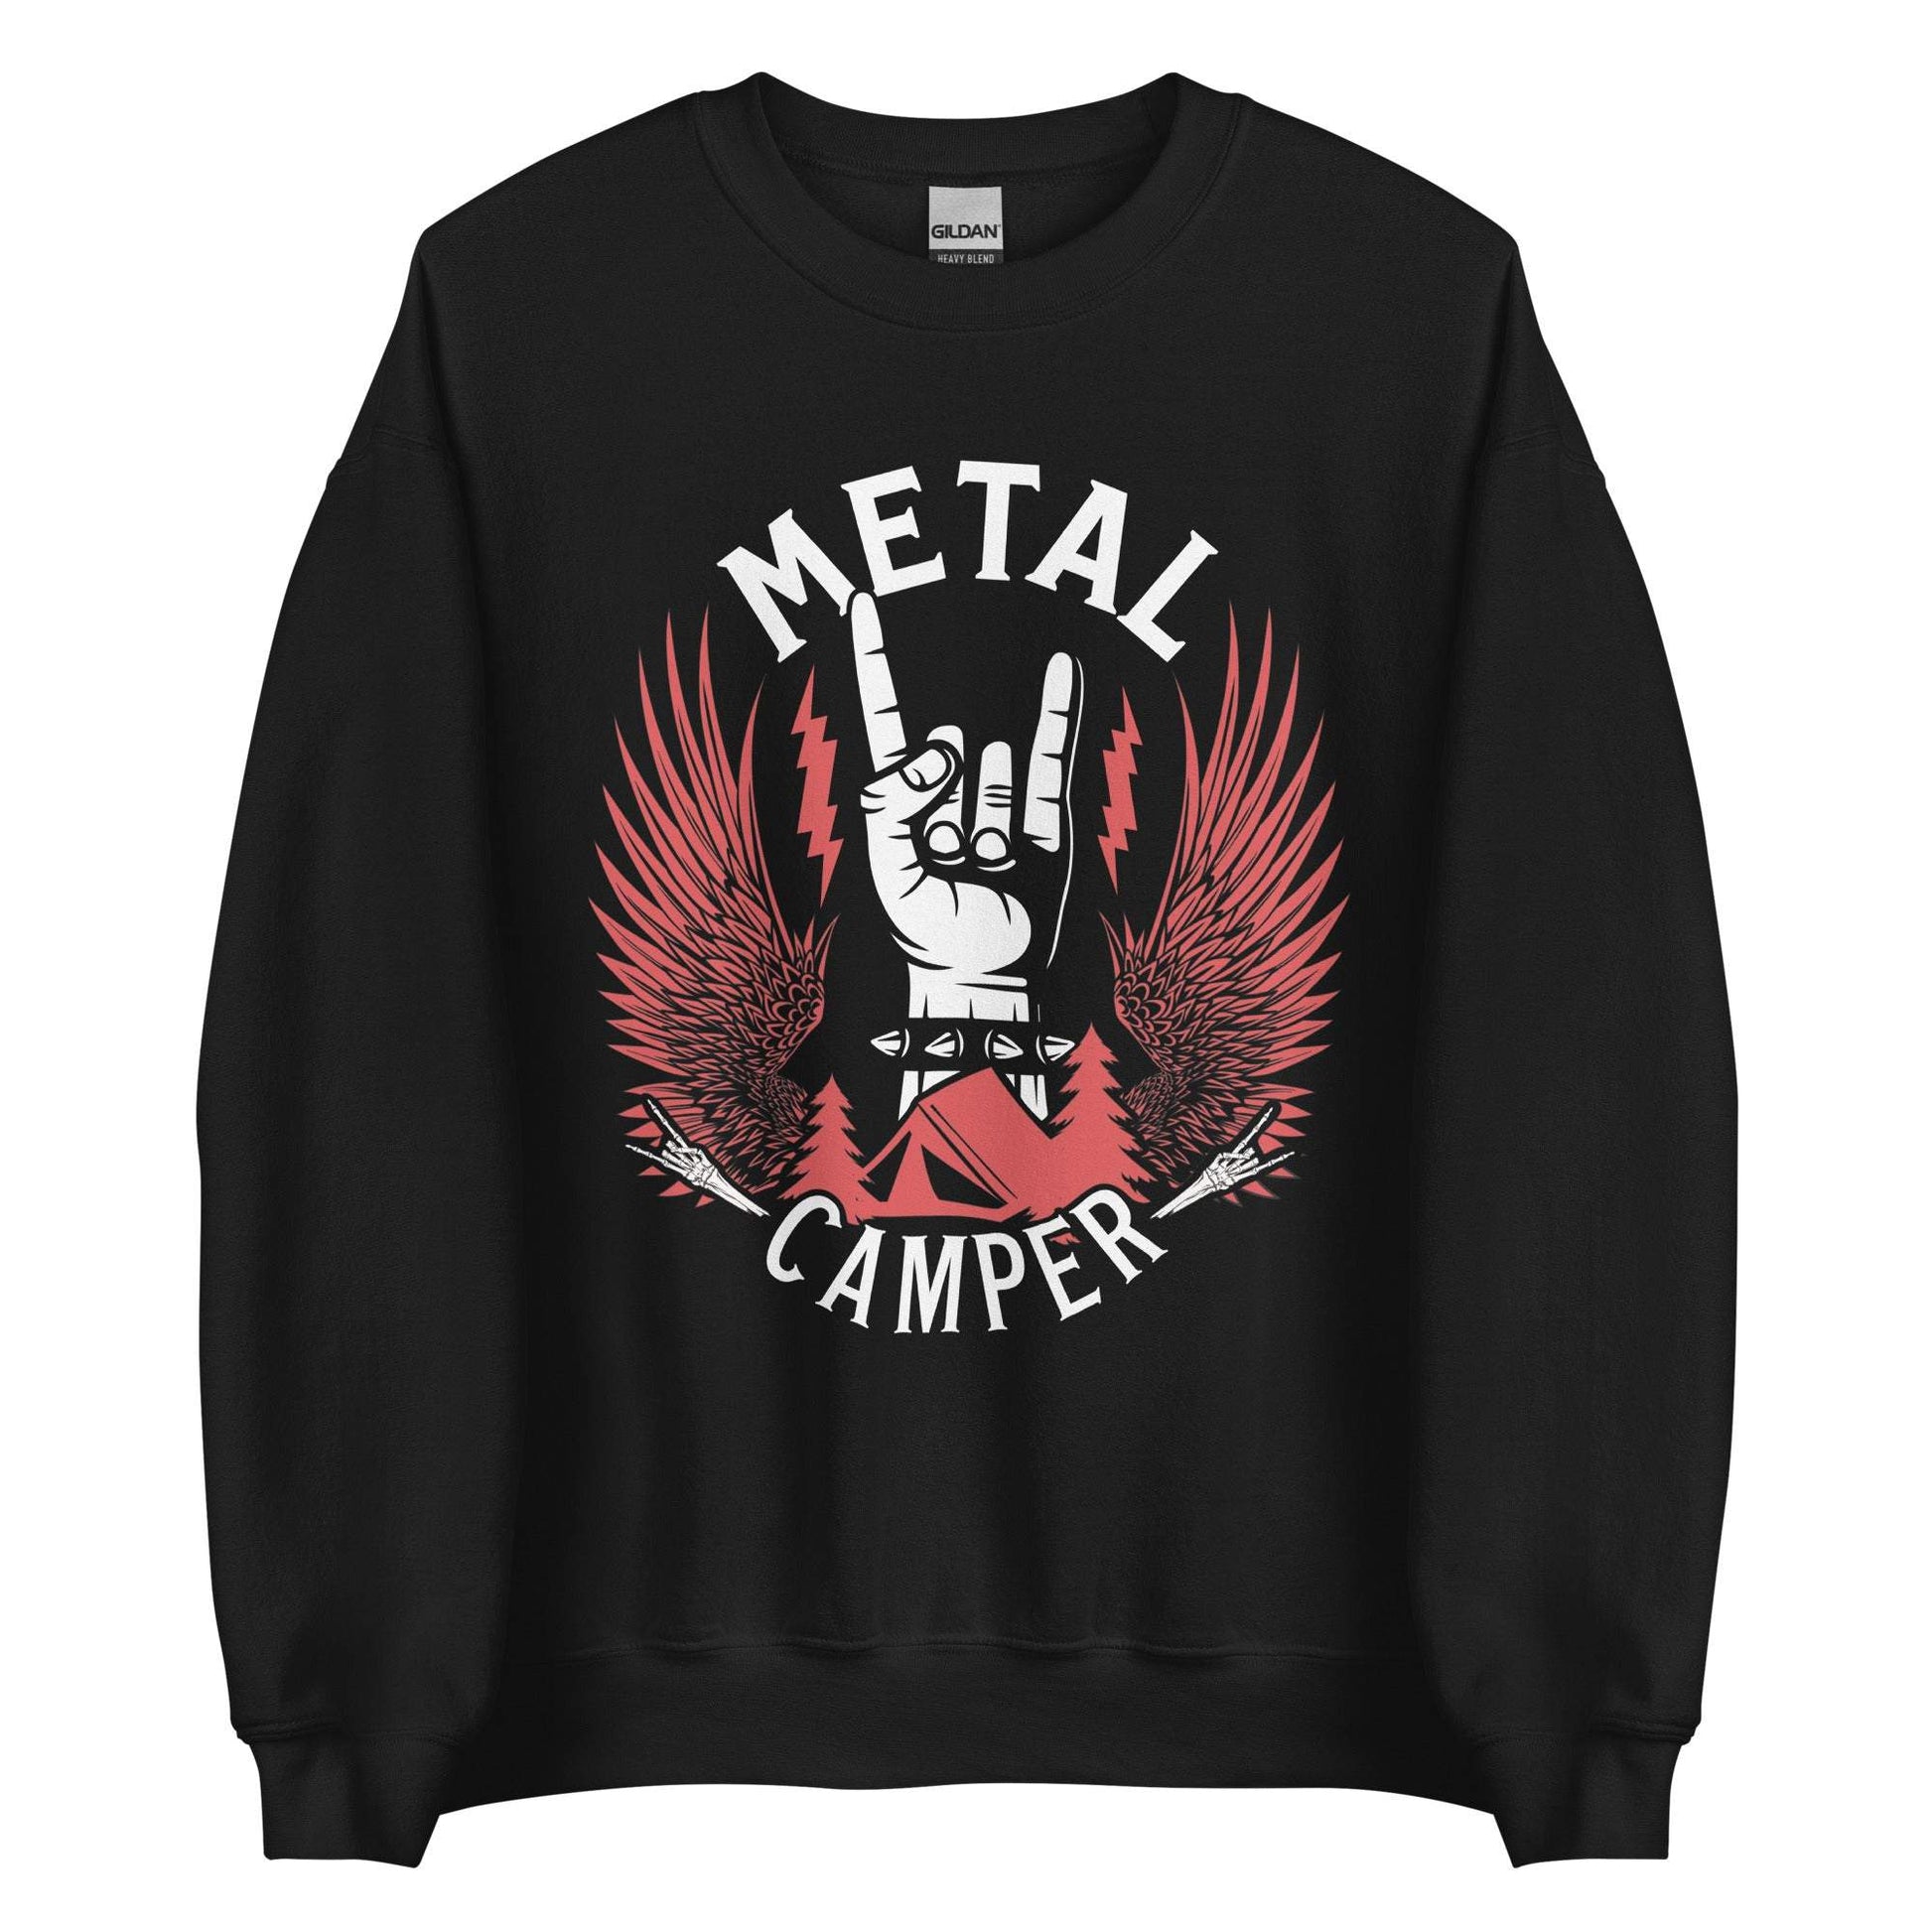 Metal Camper - Unisex Sweatshirt Premium Pullover Farbe